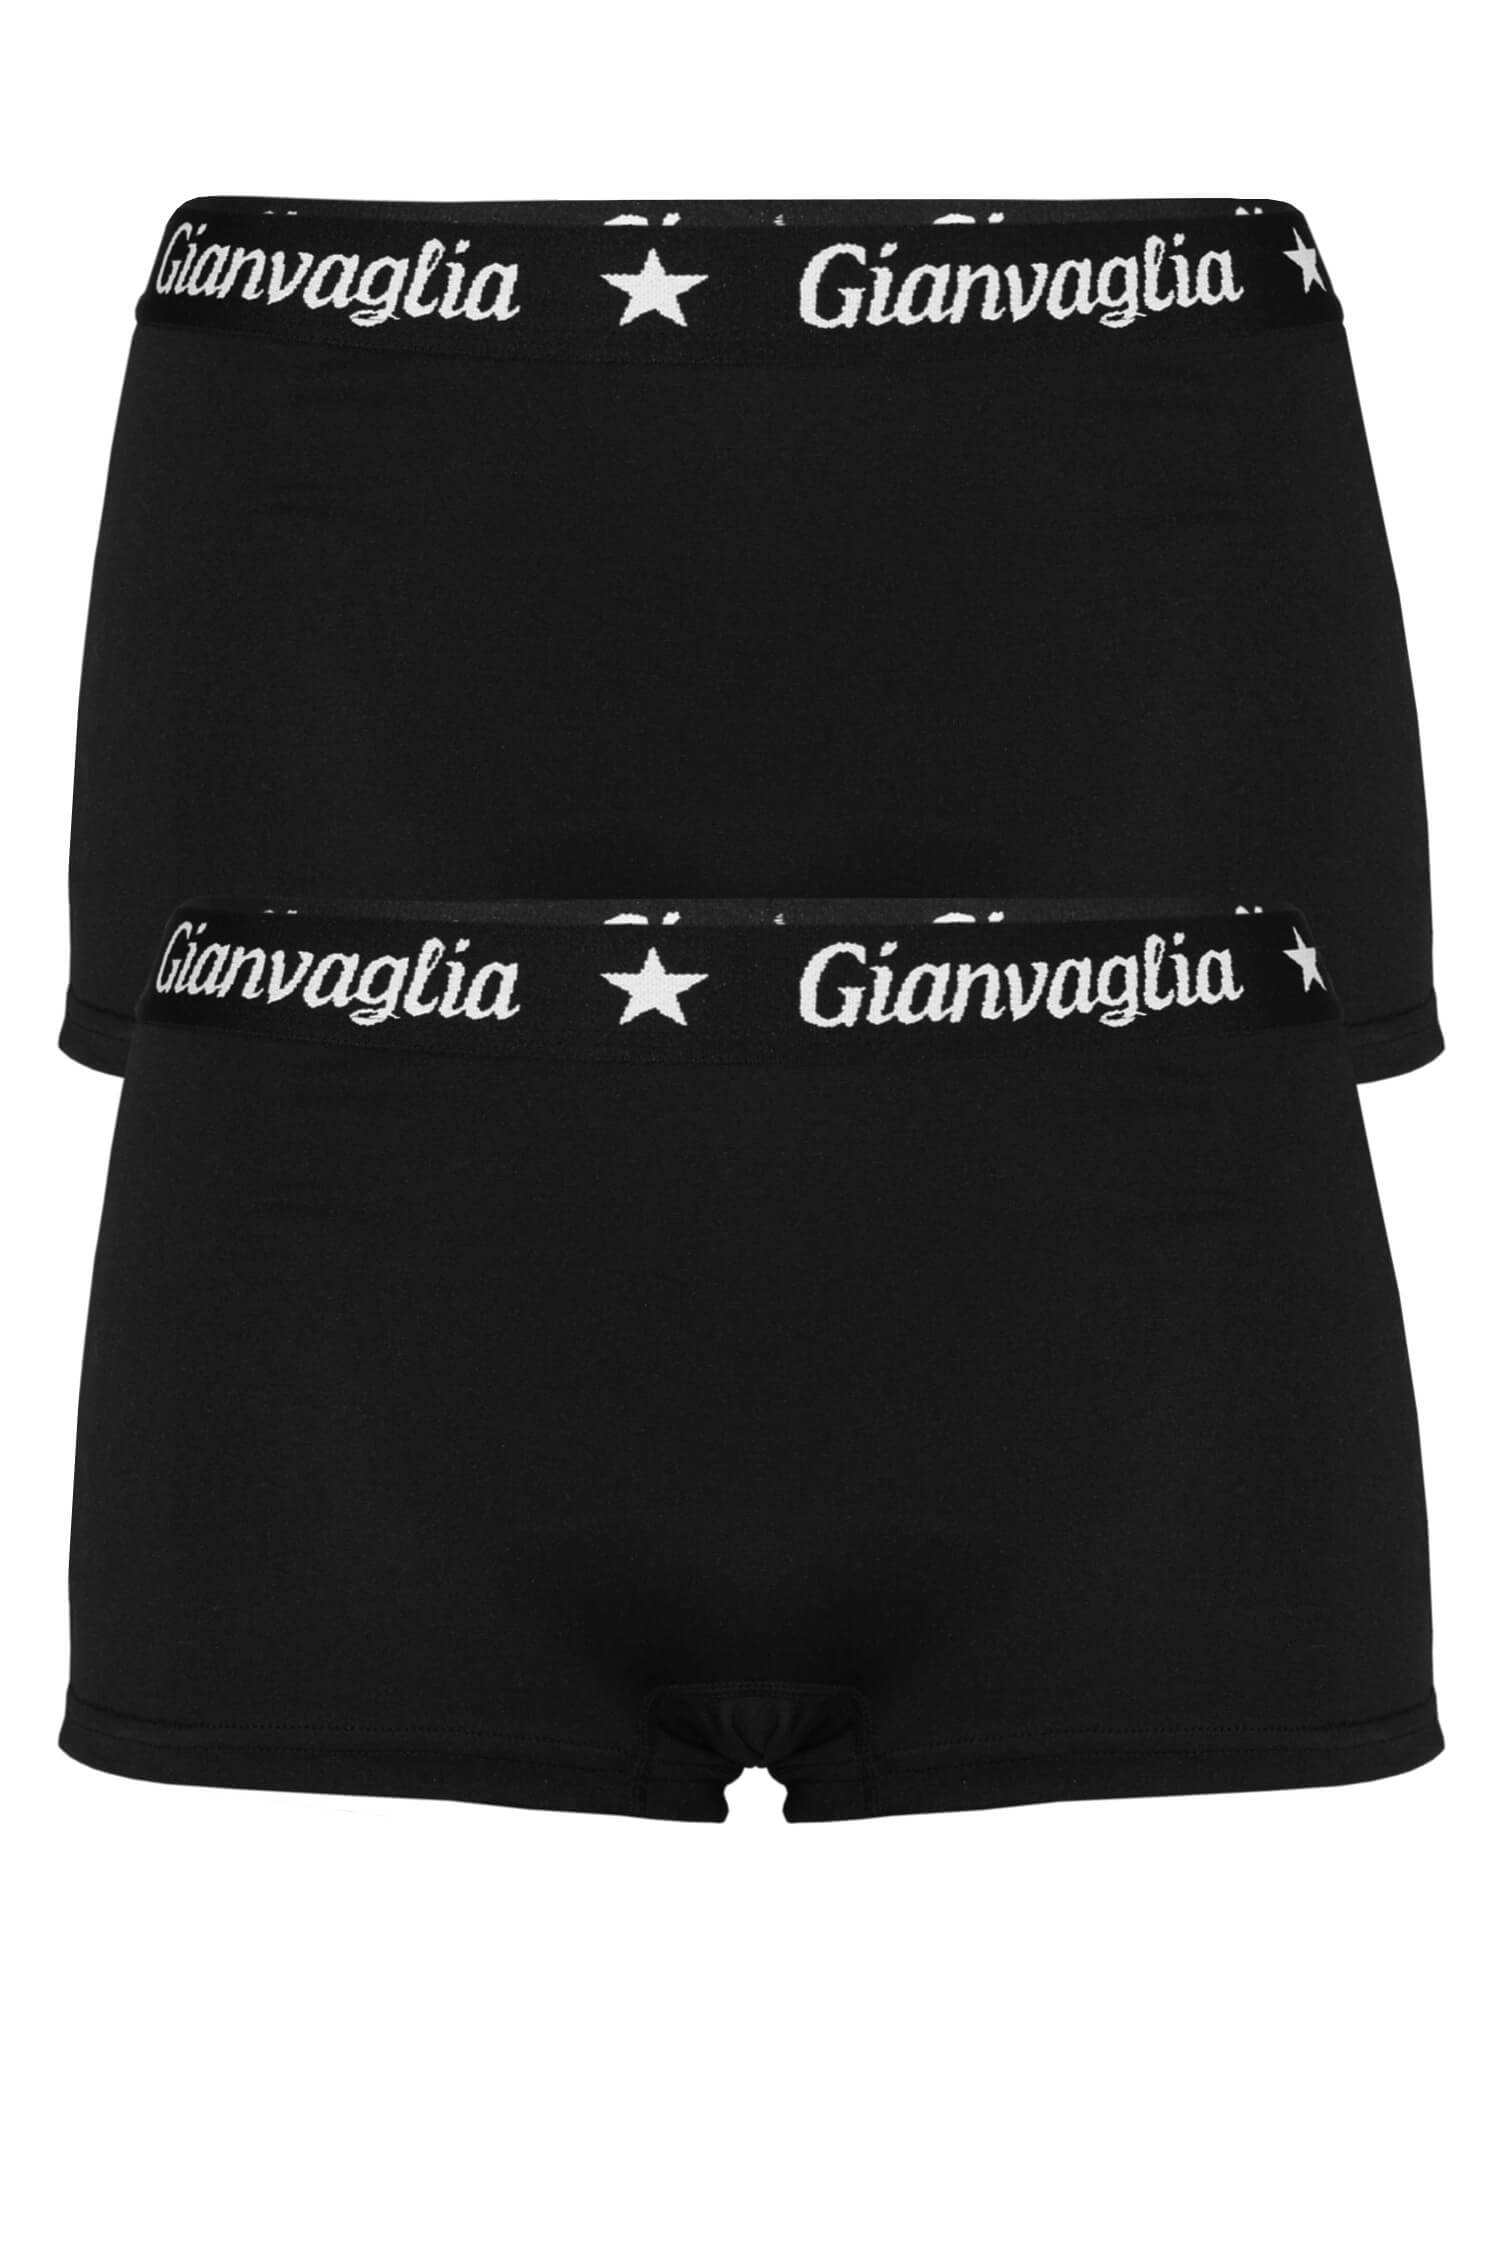 Giana dámské bavlněné boxerky 8029 - 2bal. L černá